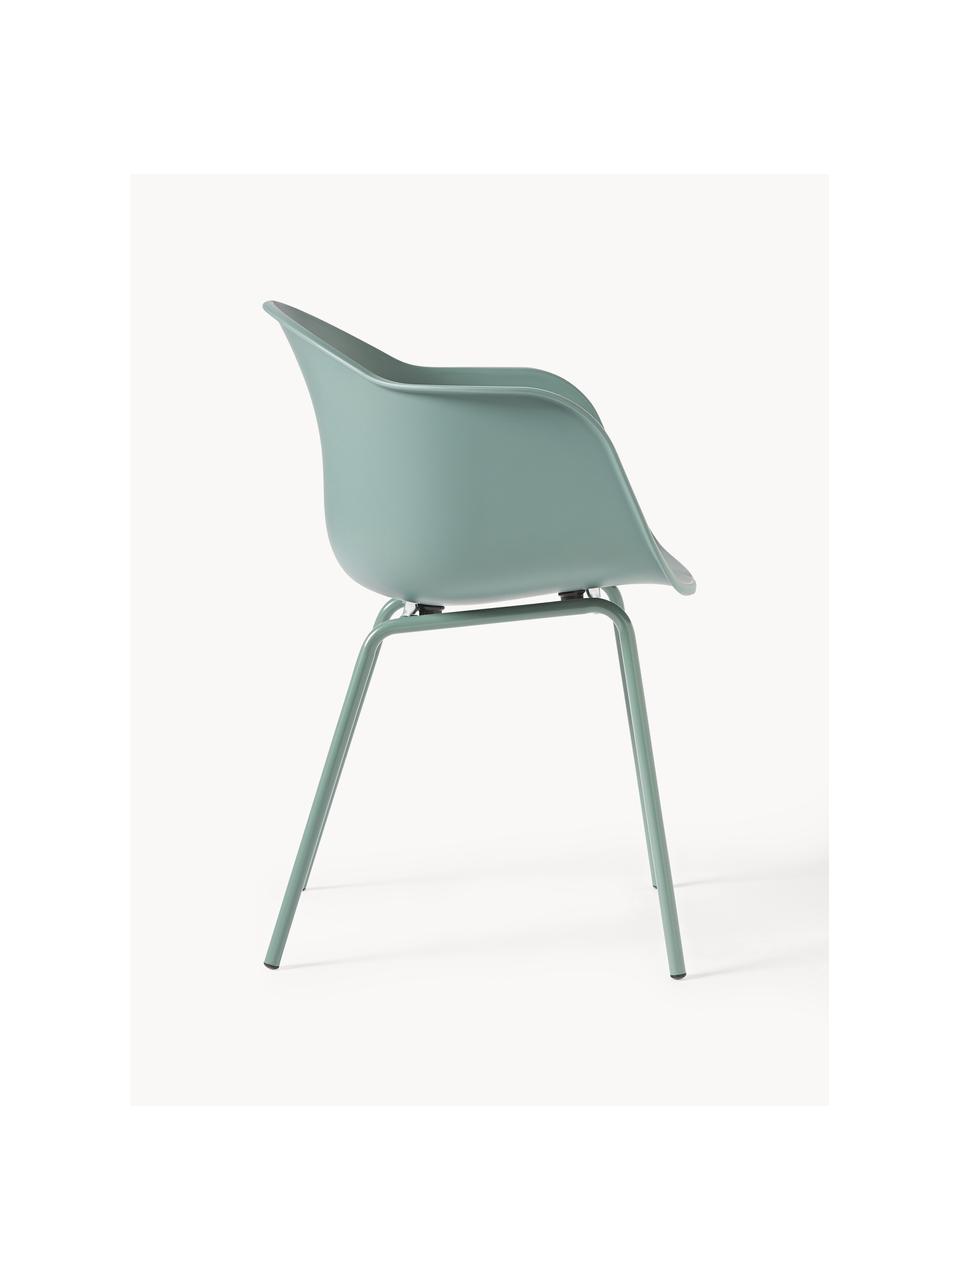 Krzesło z podłokietnikami z tworzywa sztucznego z metalowymi nogami Claire, Nogi: metal malowany proszkowo, Zielony, S 60 x G 54 cm